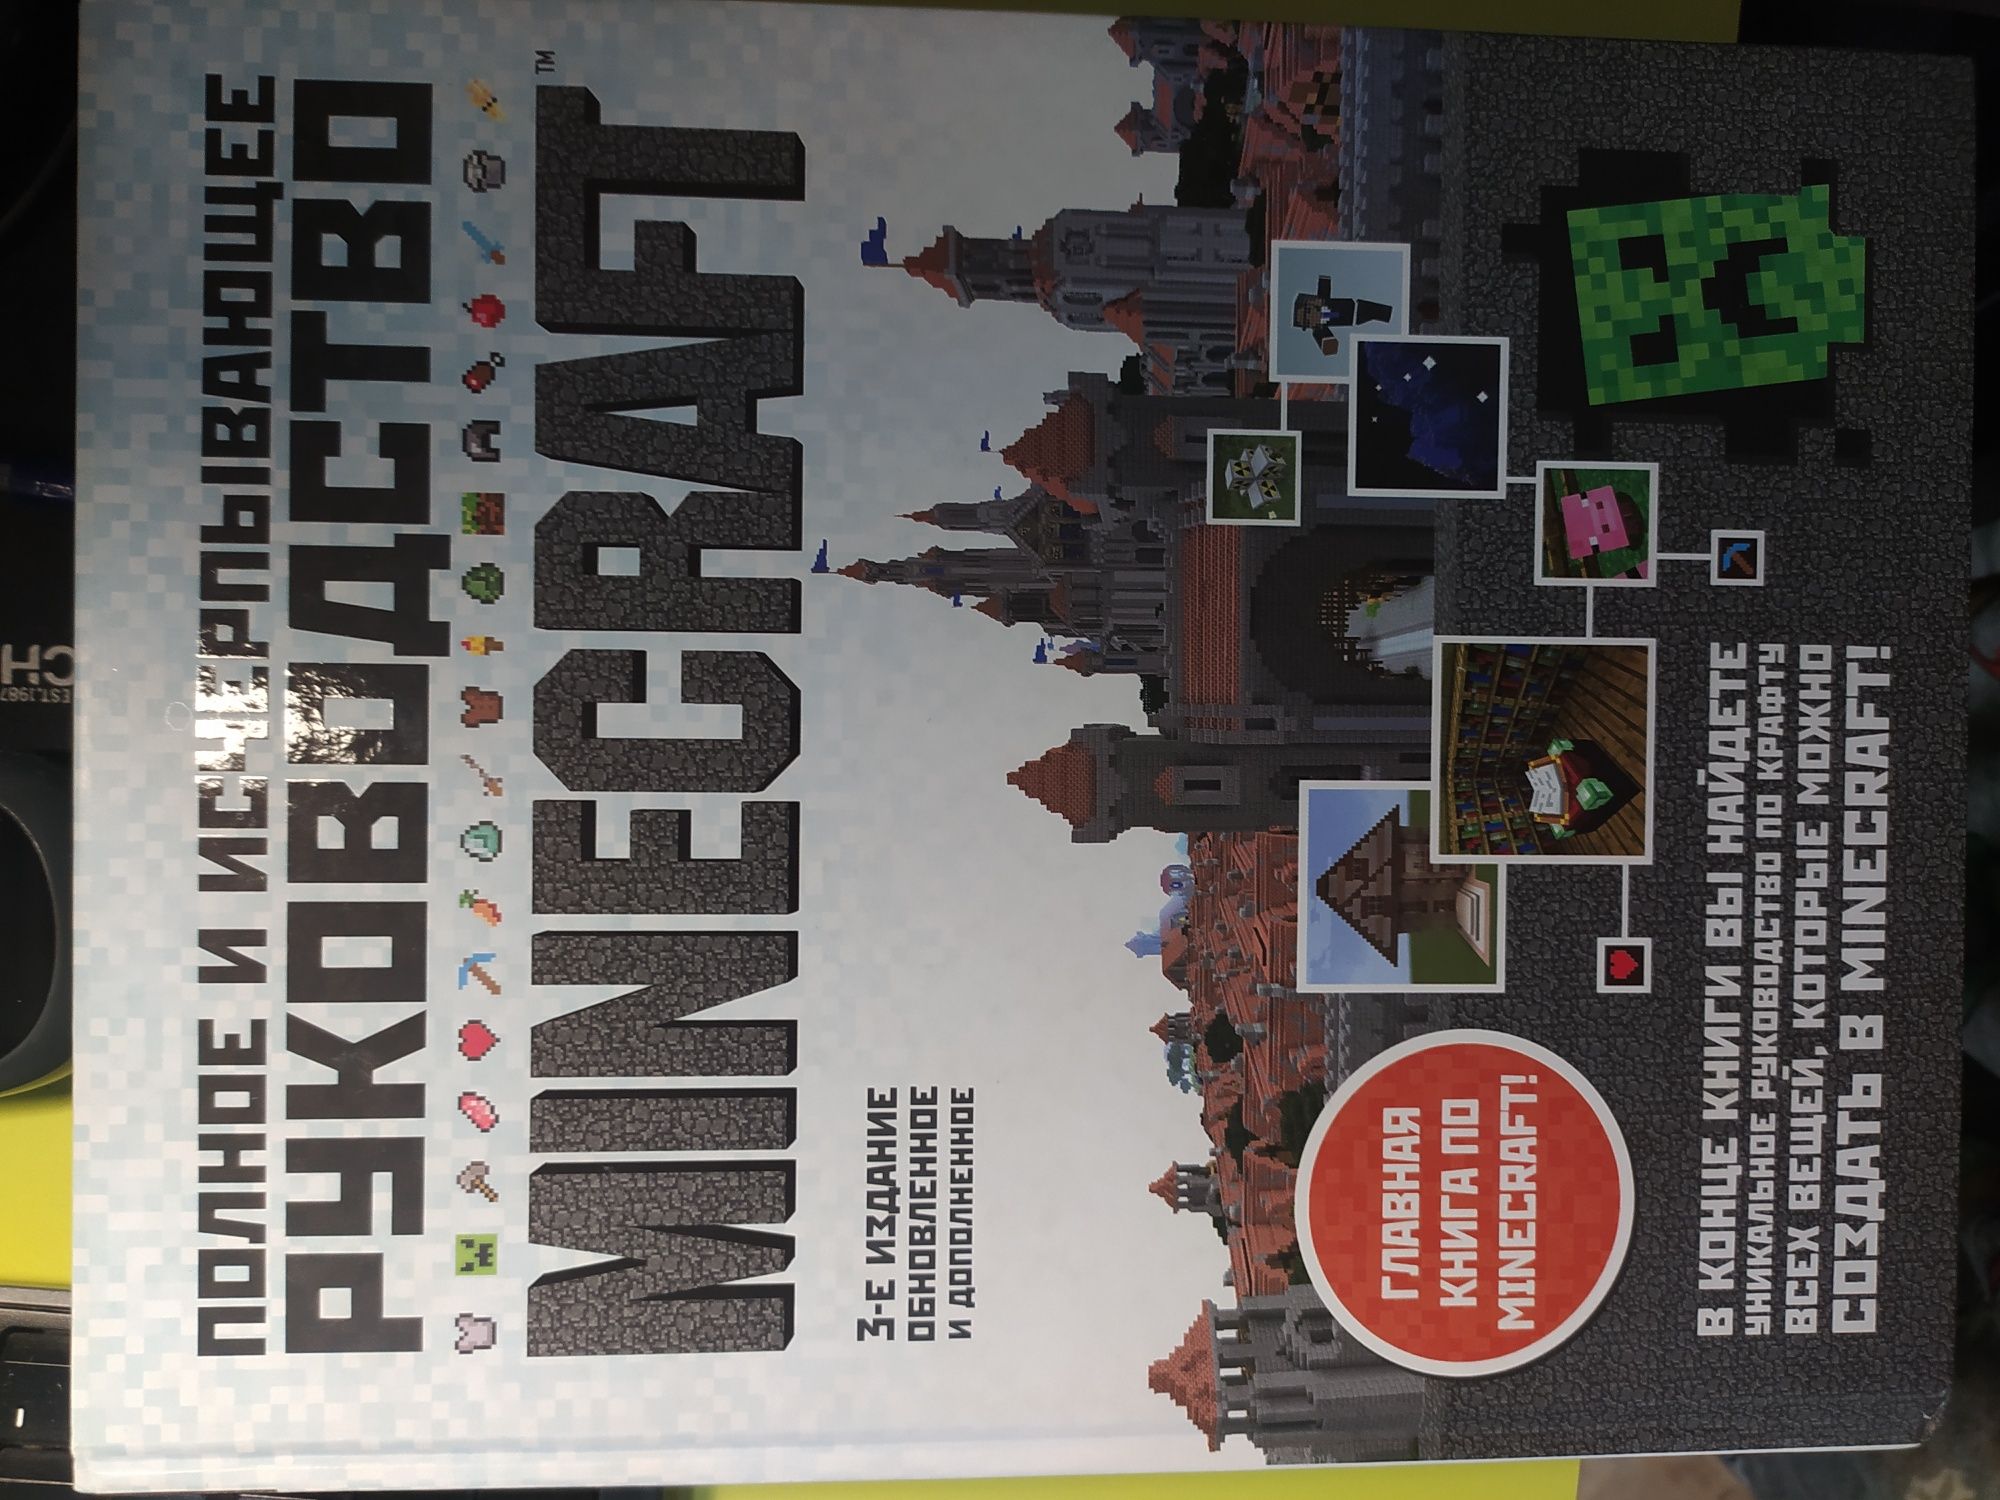 Книга "Полное и исчерпывающее руководство minecraft 3 издание".